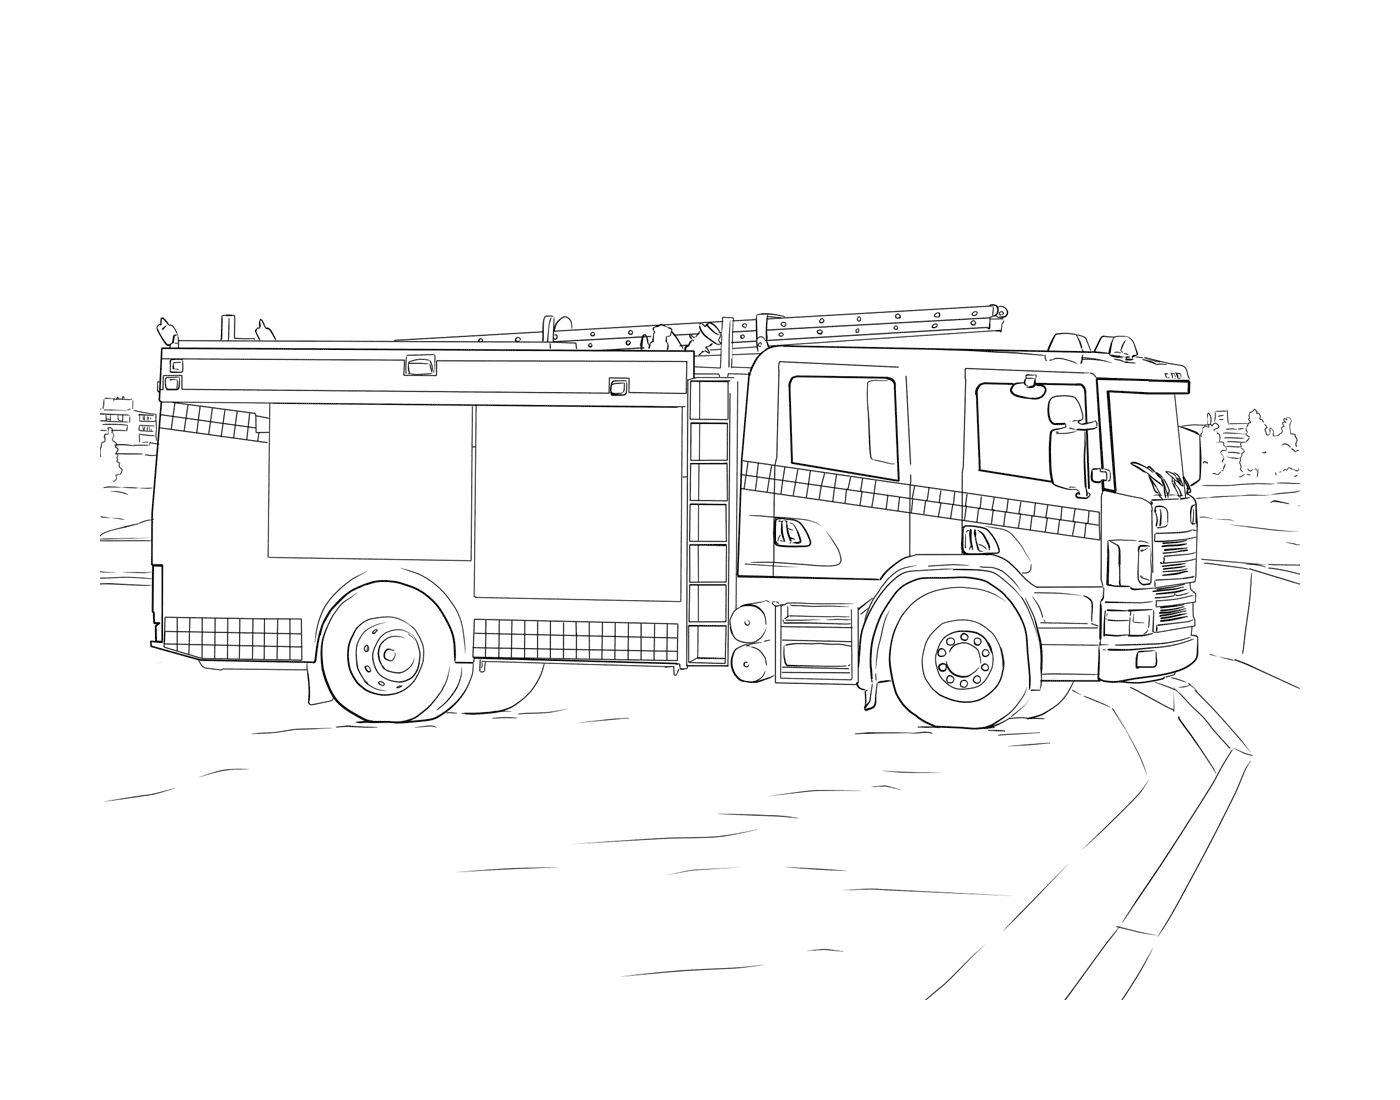  Dibujo de un camión de bomberos 